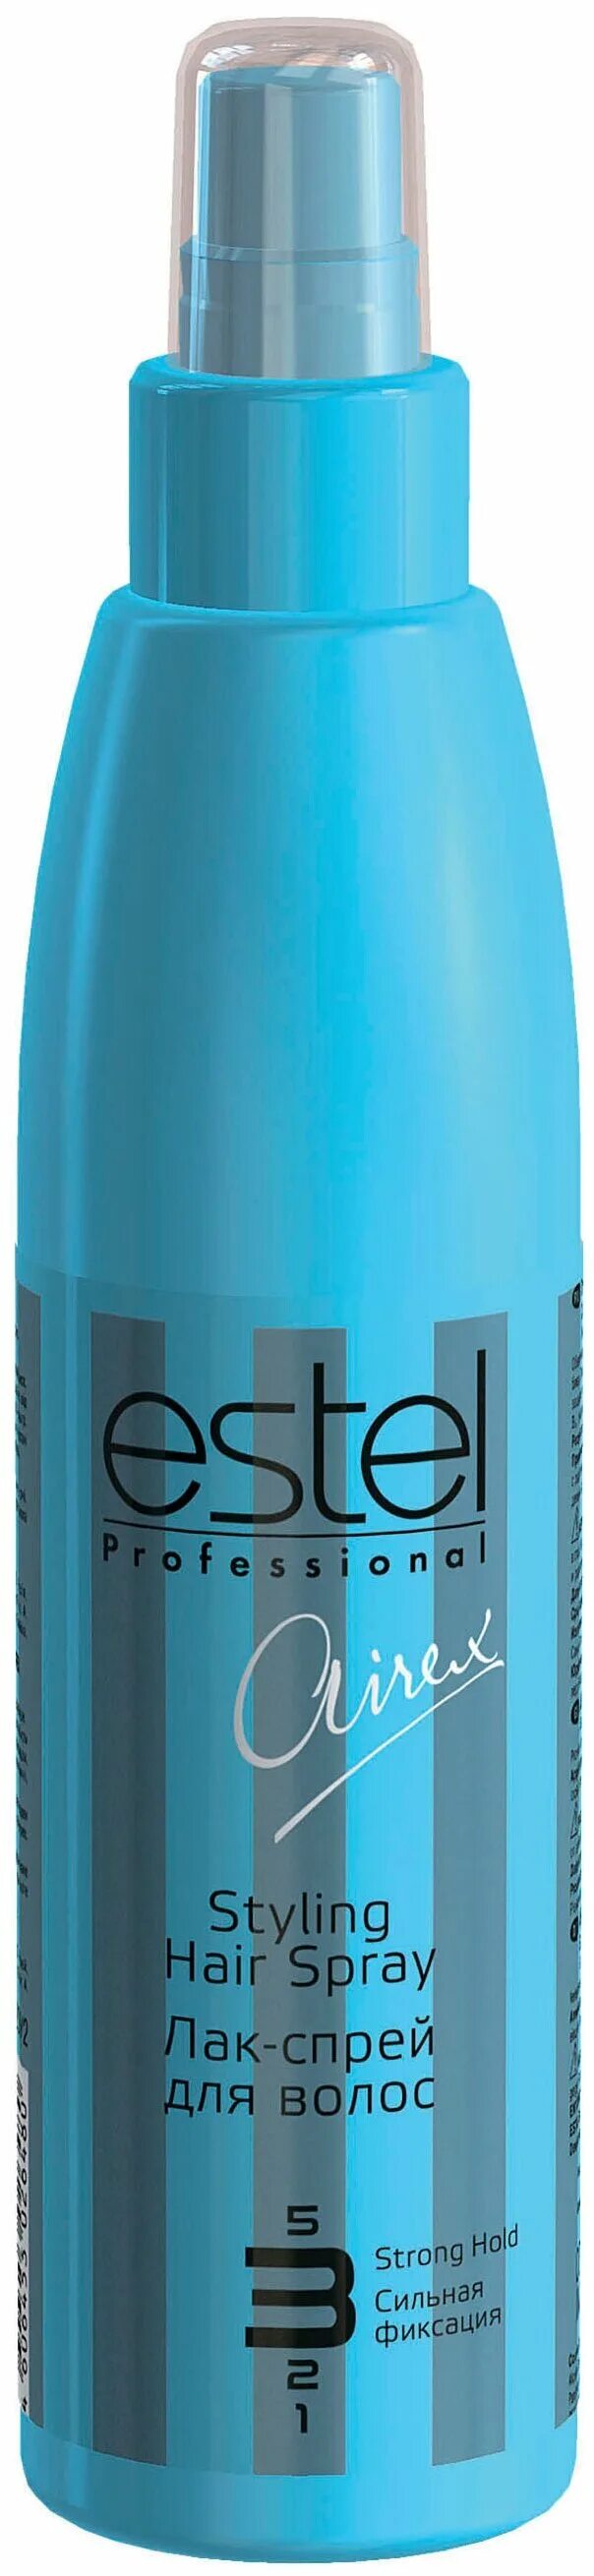 Легкая термозащита для волос. Эстель Айрекс спрей. Термозащита Estel спрей-термозащита Airex. Estel Airex термозащита для волос. Спрей термозащита Estel professional спрей Airex.